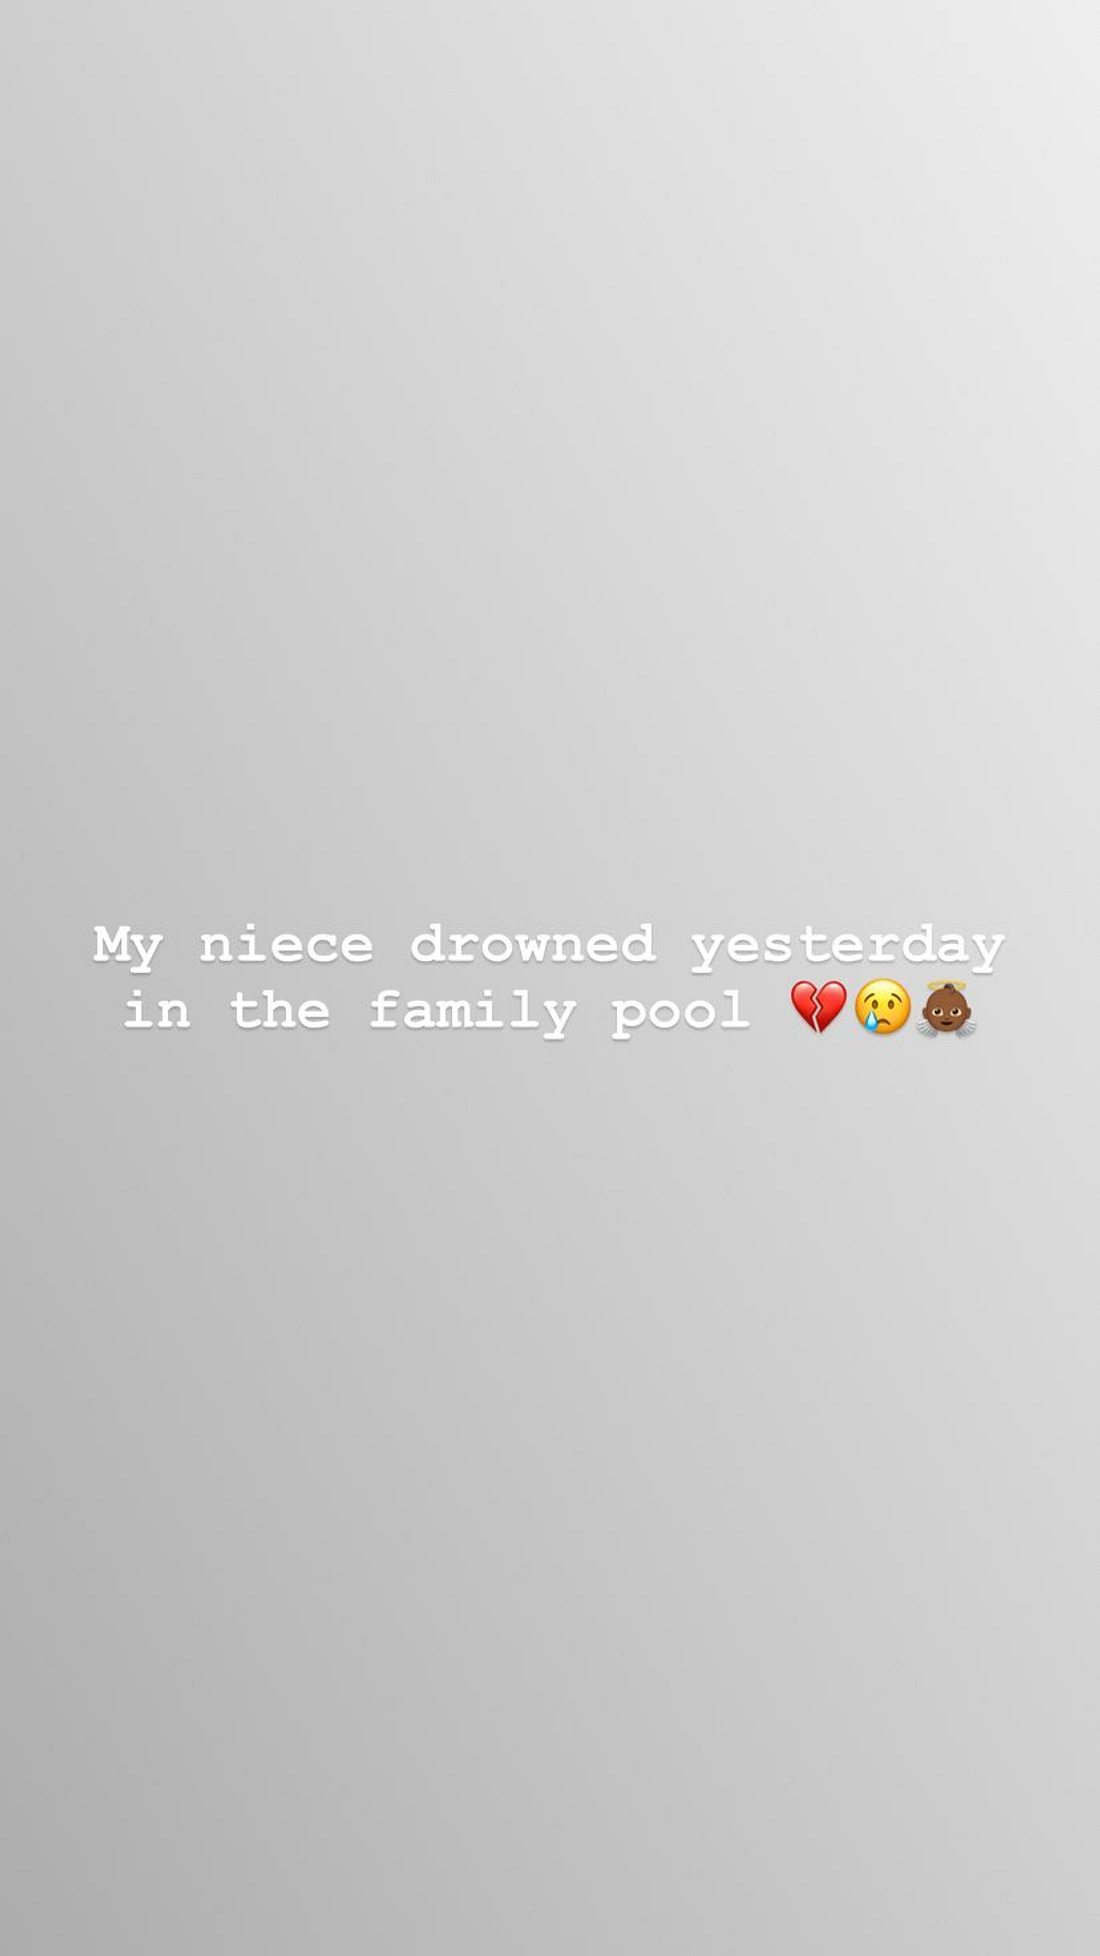 Das postete XXXTentacions Mutter am 12.7. in ihrer Instagram-Story